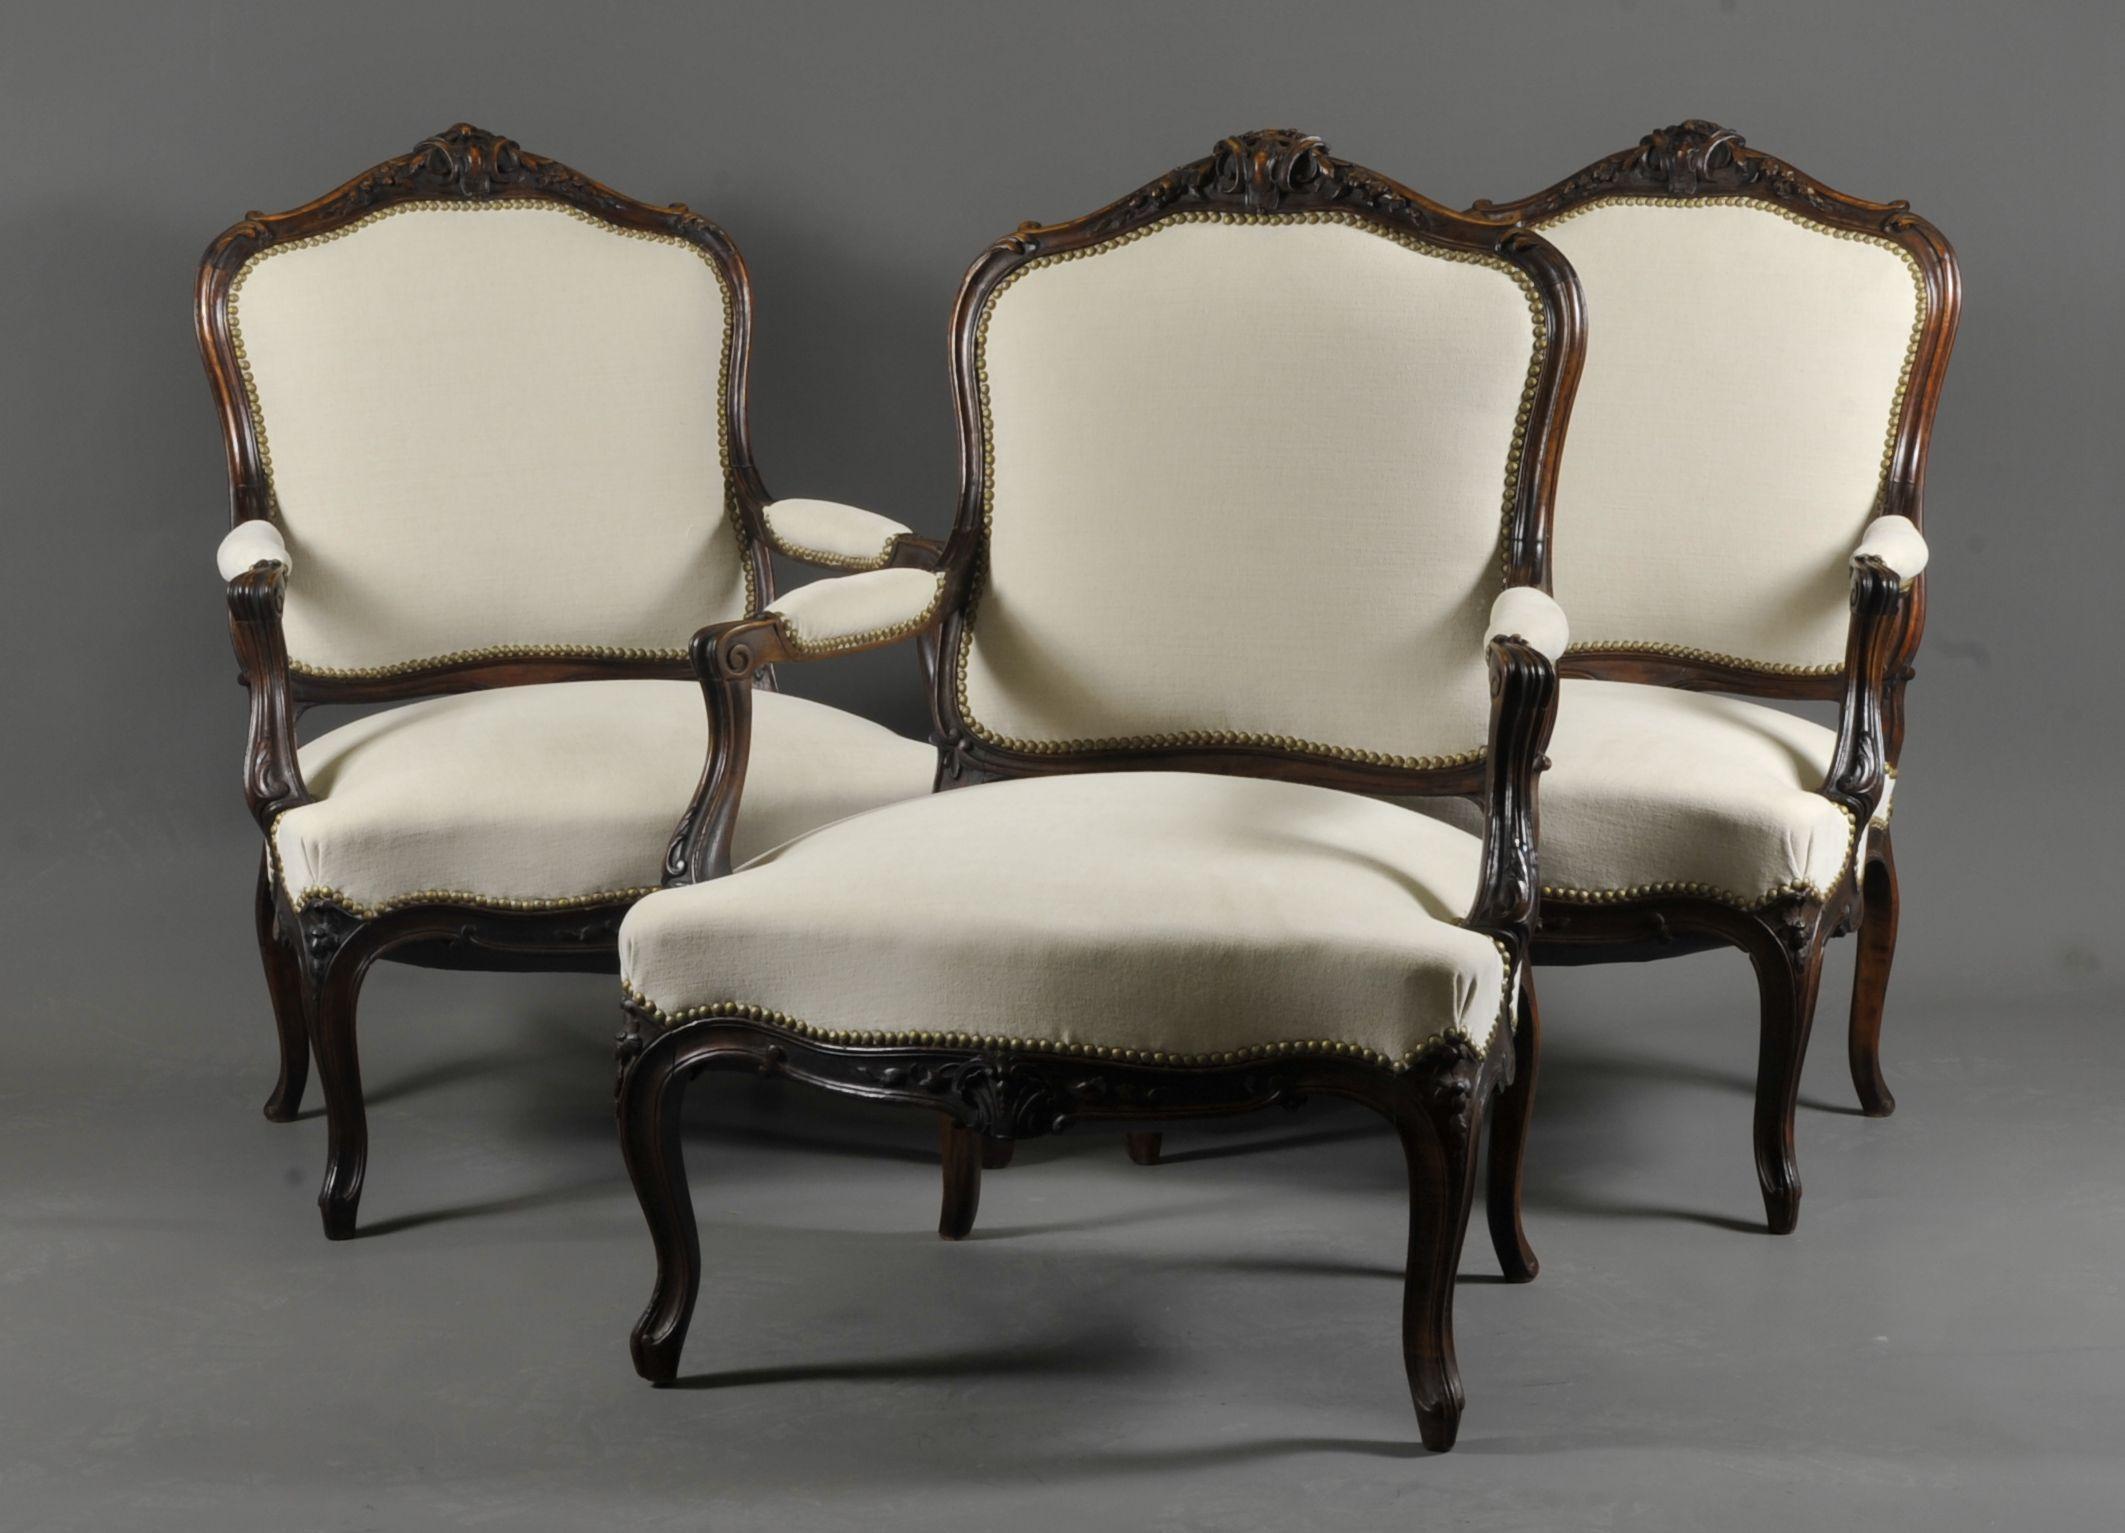 Belle suite de trois grands fauteuils de style Louis XV en noyer sculpté.

Dossier à la reine.

Sièges très confortables.

Travail français de la période Napoléon III vers 1850.

Excellent état, armatures remises à neuf, méthodes traditionnelles